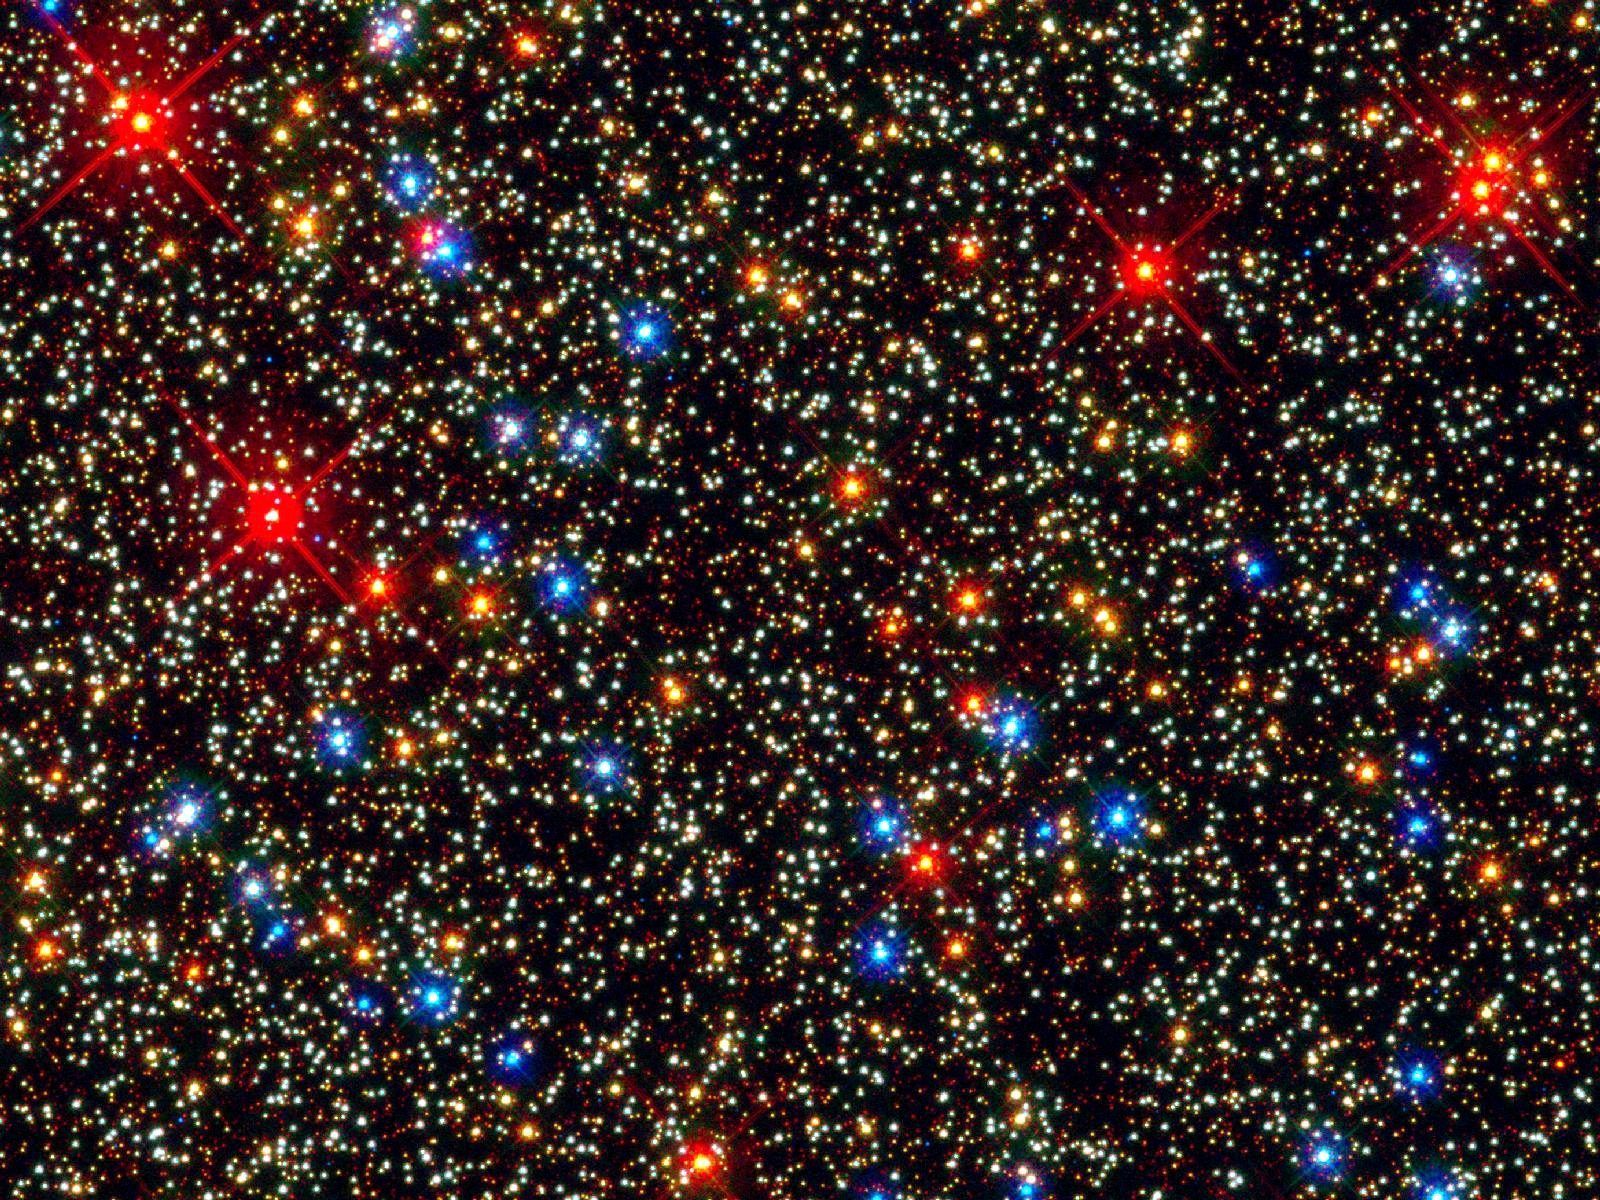 Star Cluster HD Wallpaper | 1920x1080 | ID:11398